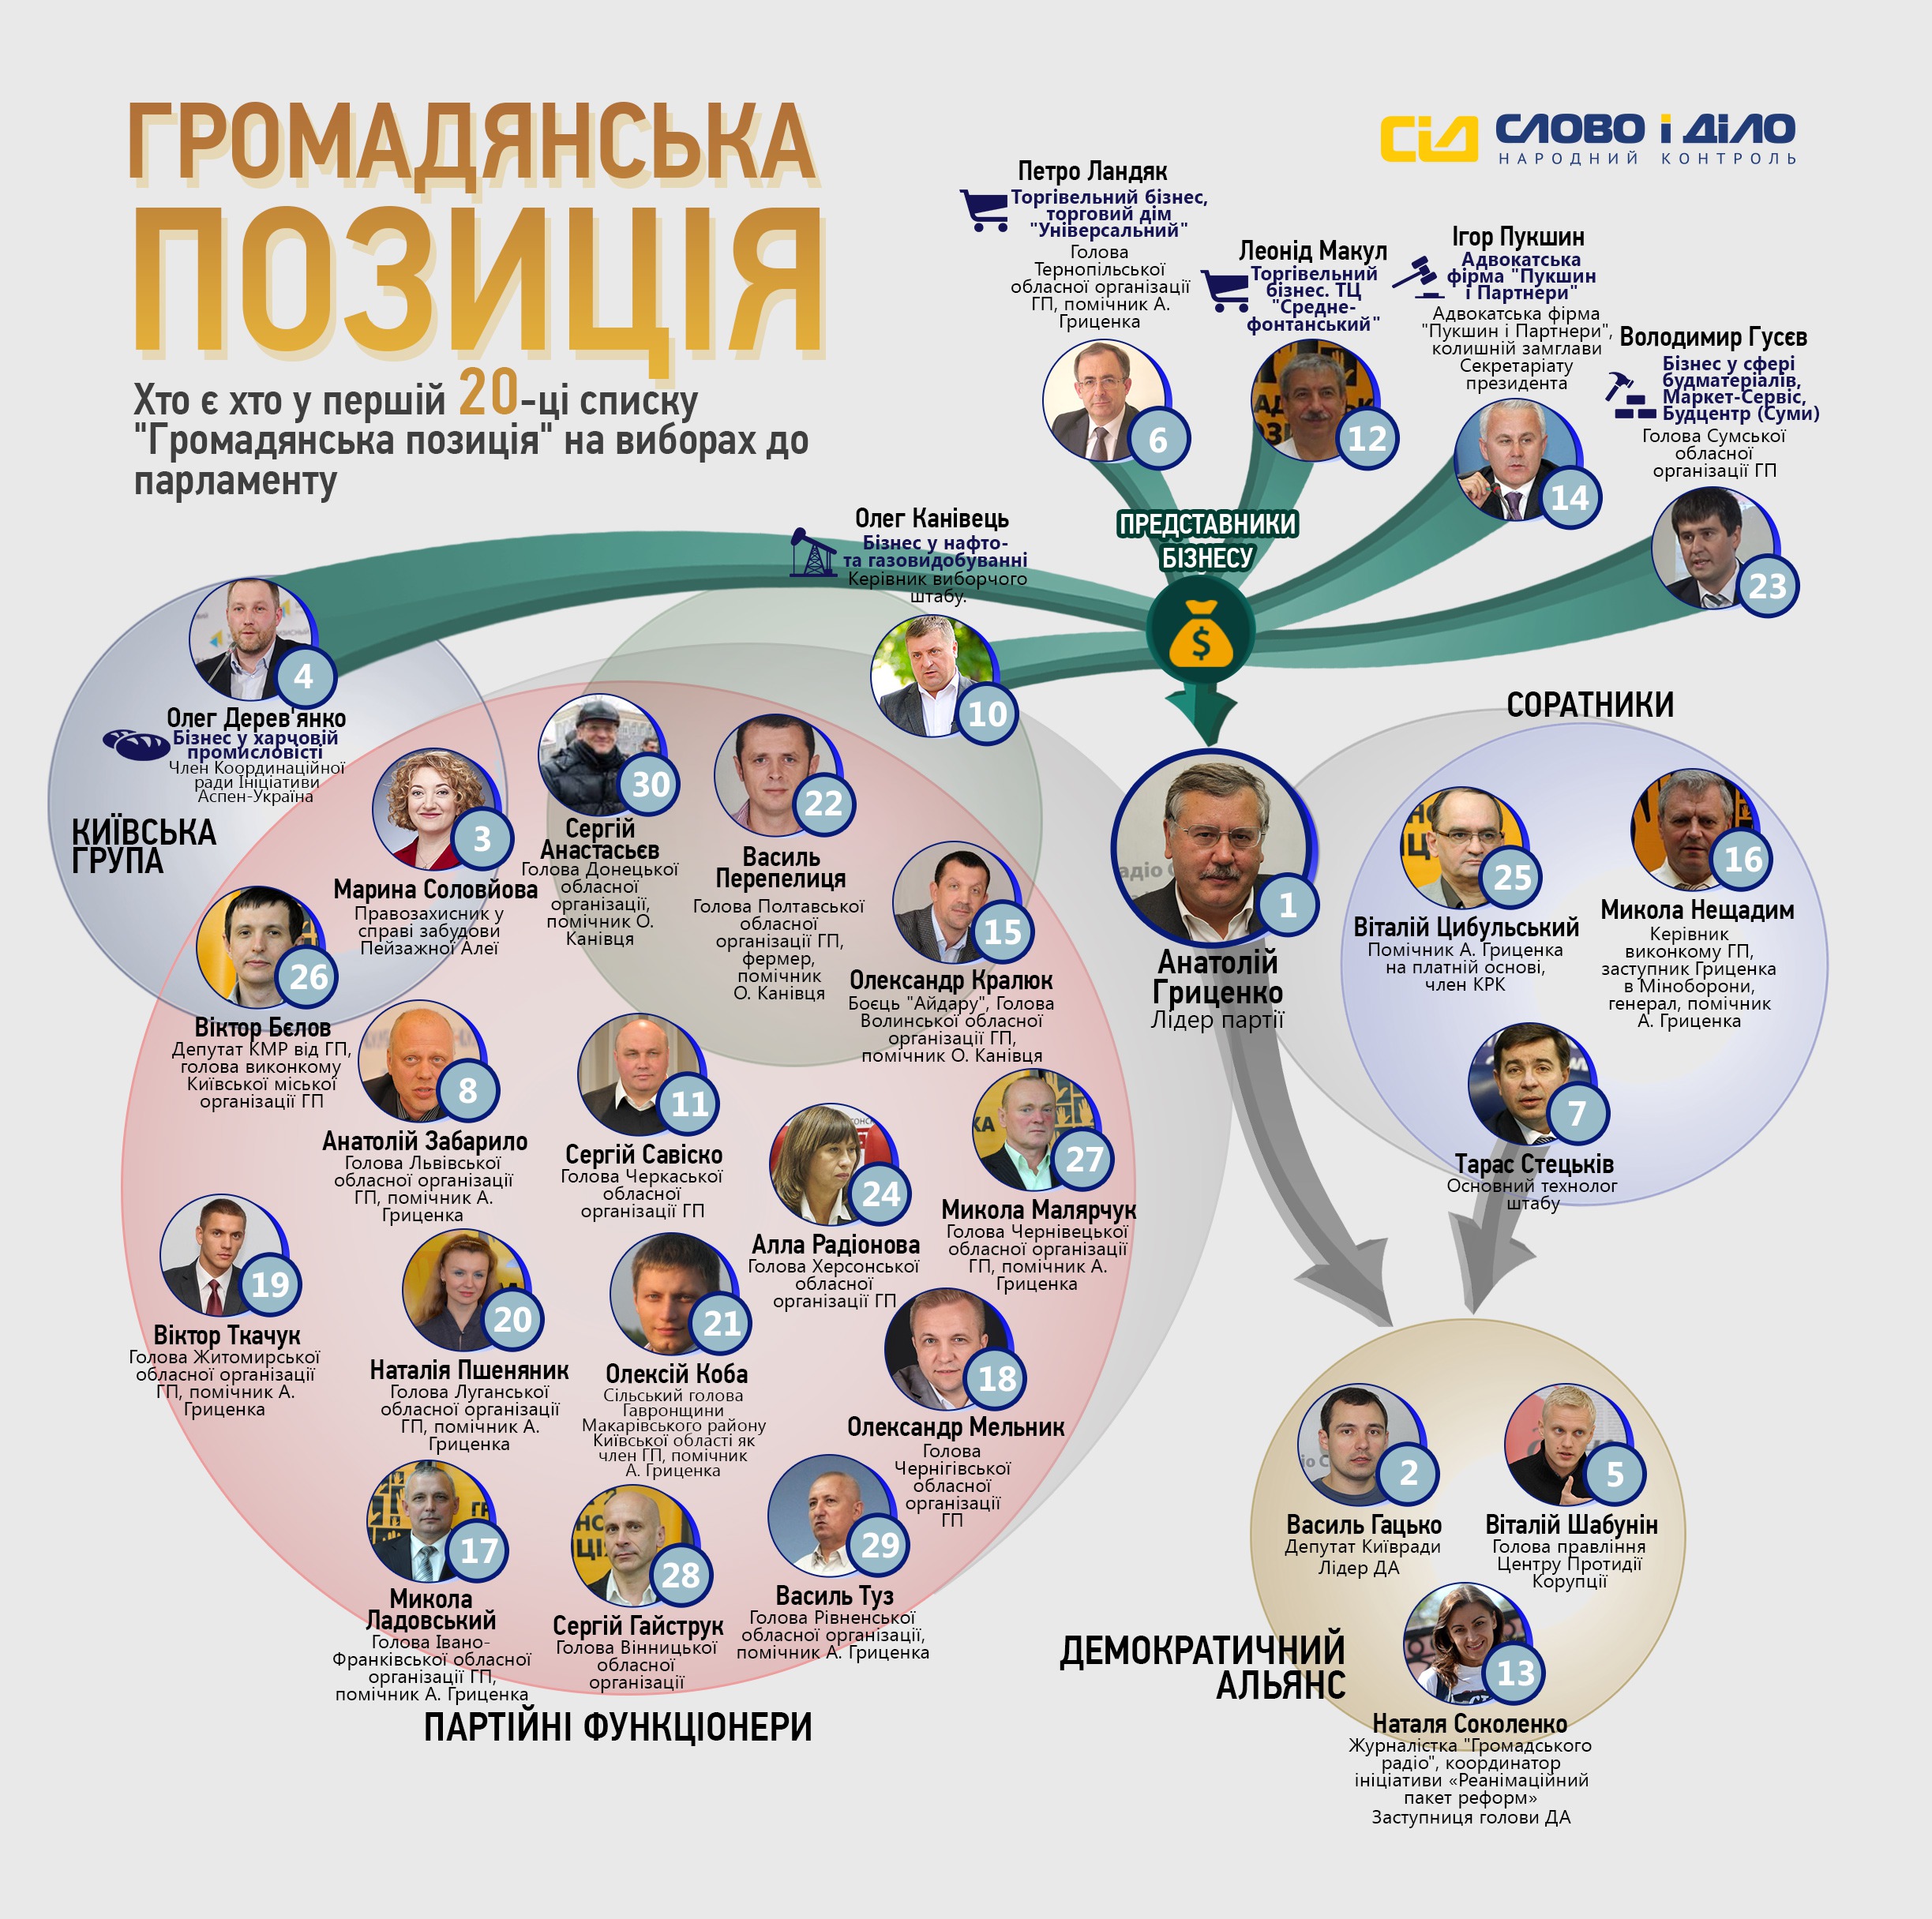 Список партії «Громадянська позиція» Анатолія Гриценко. Вибори до Верховної Ради України